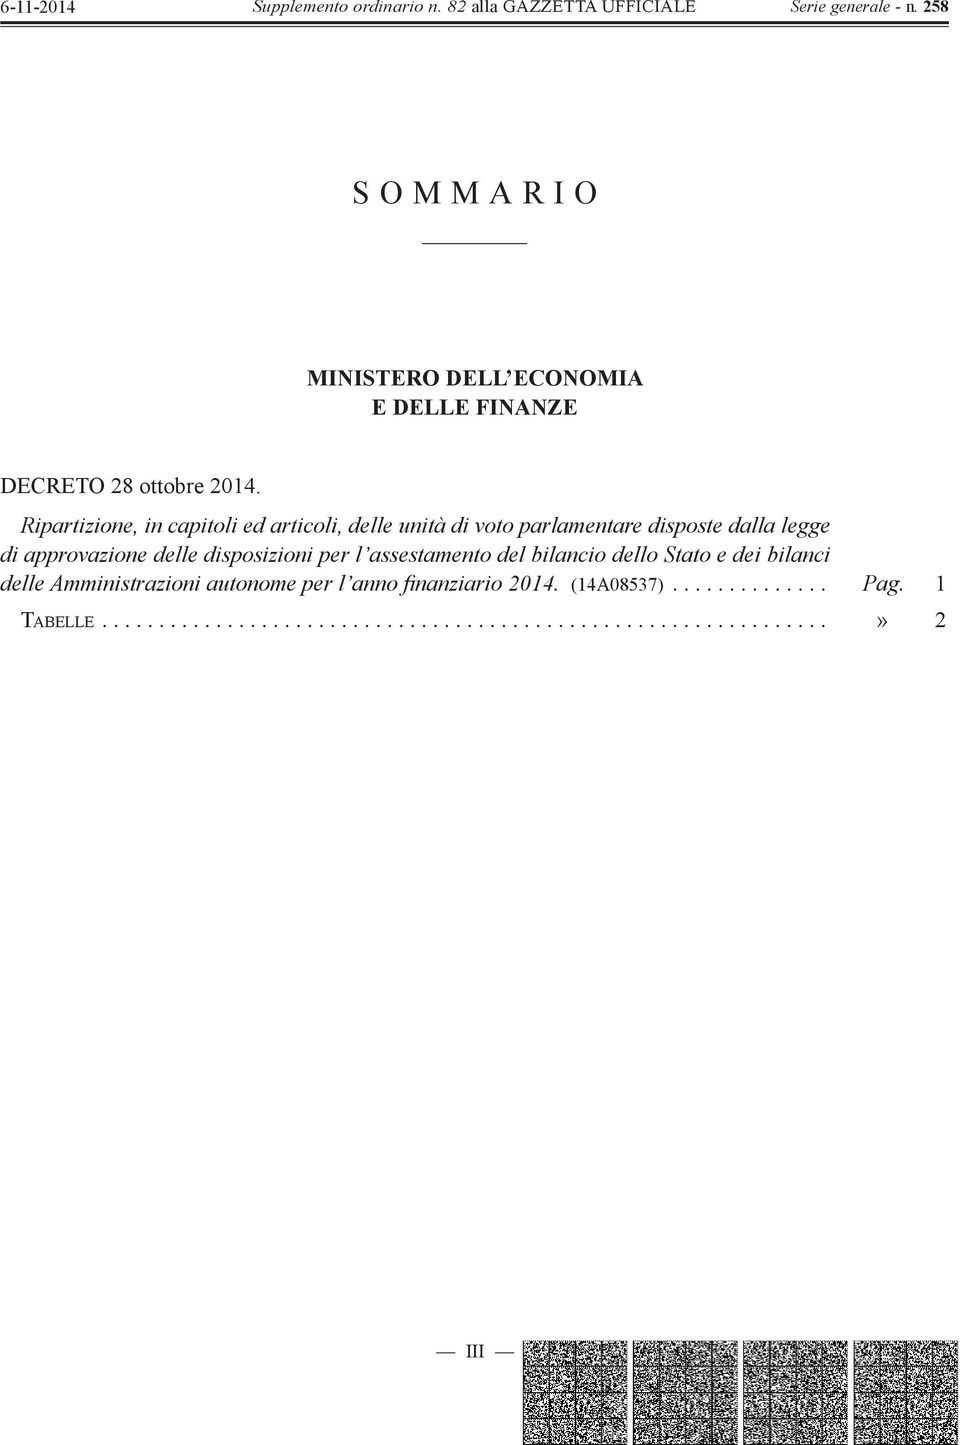 approvazione delle disposizioni per l assestamento del bilancio dello Stato e dei bilanci delle